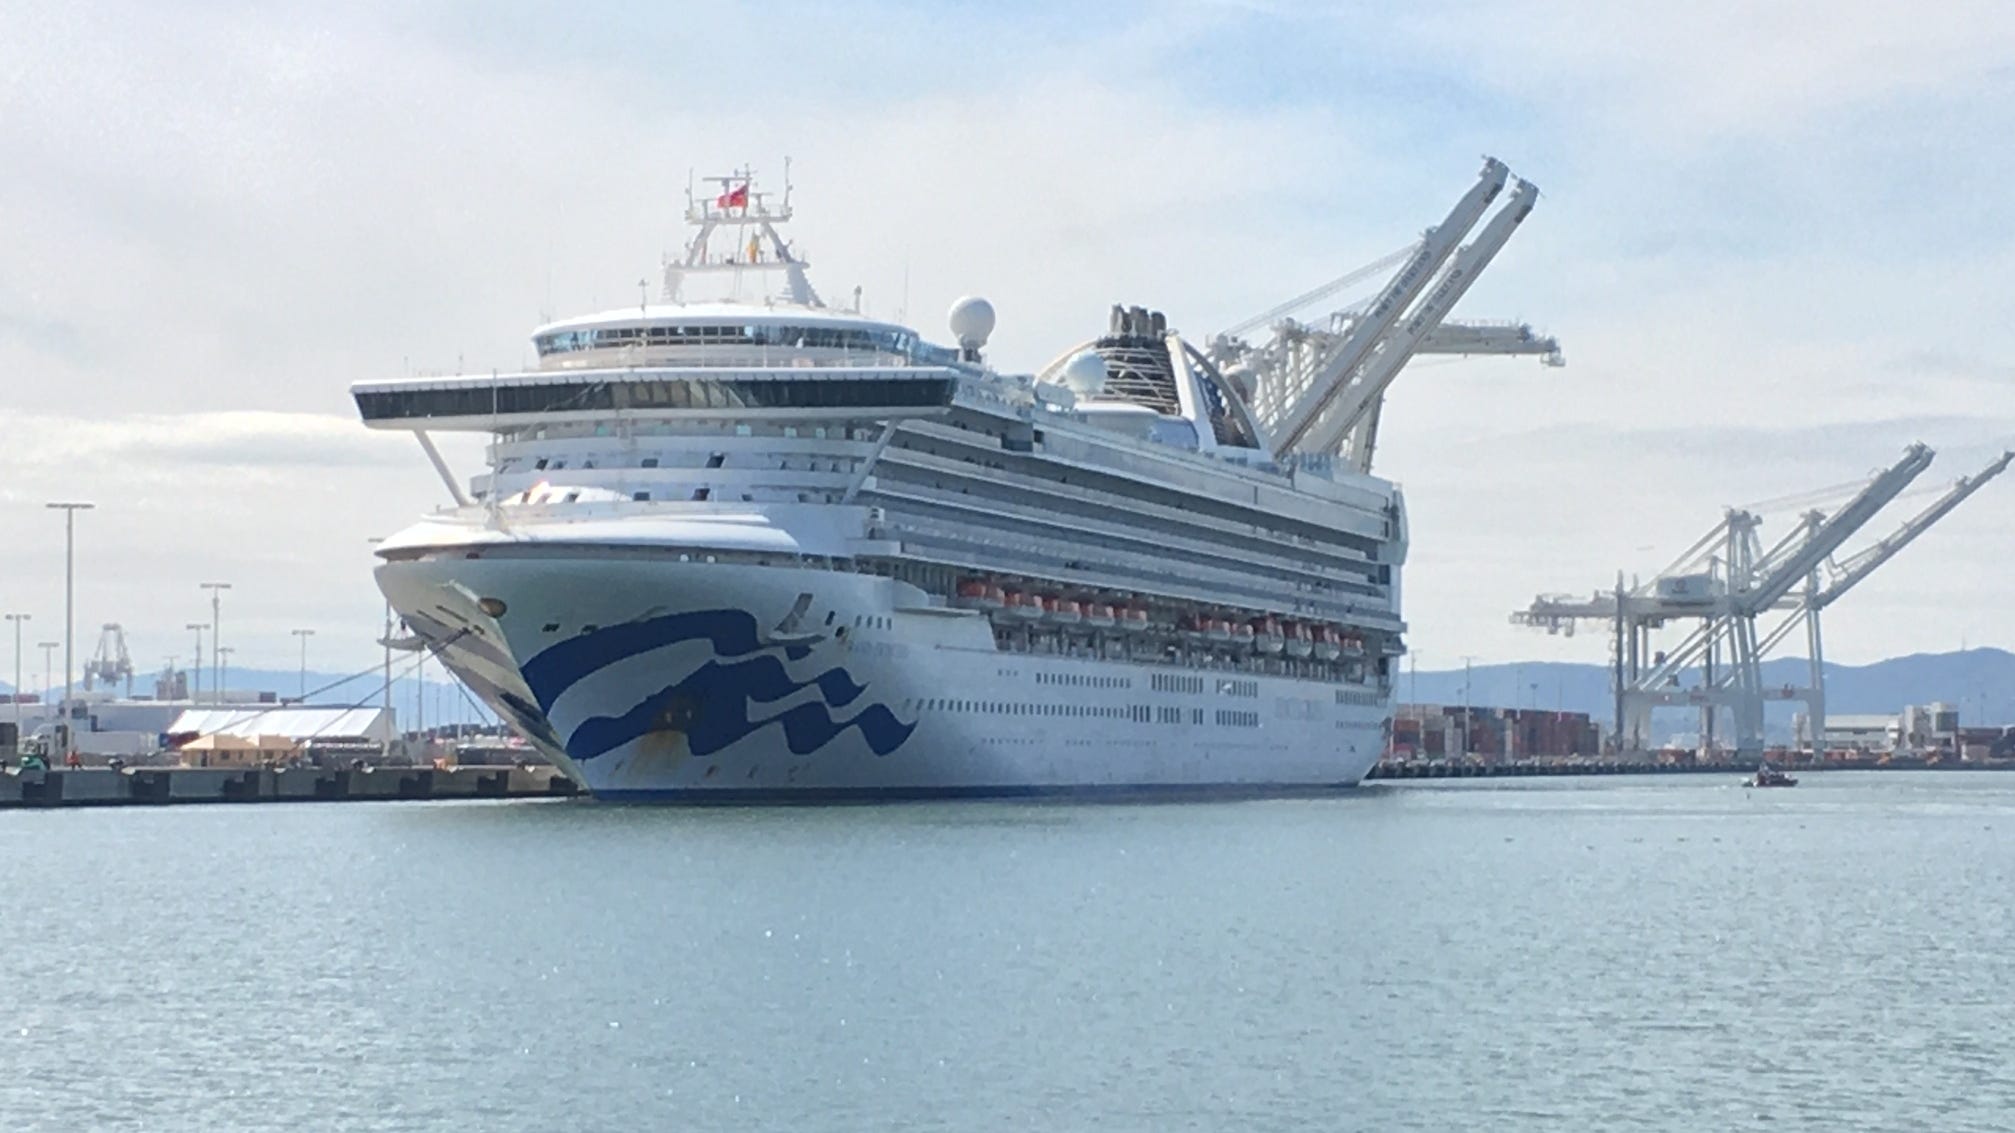 Coronavirus, cruise ship Some US ports may deny entry amid COVID19